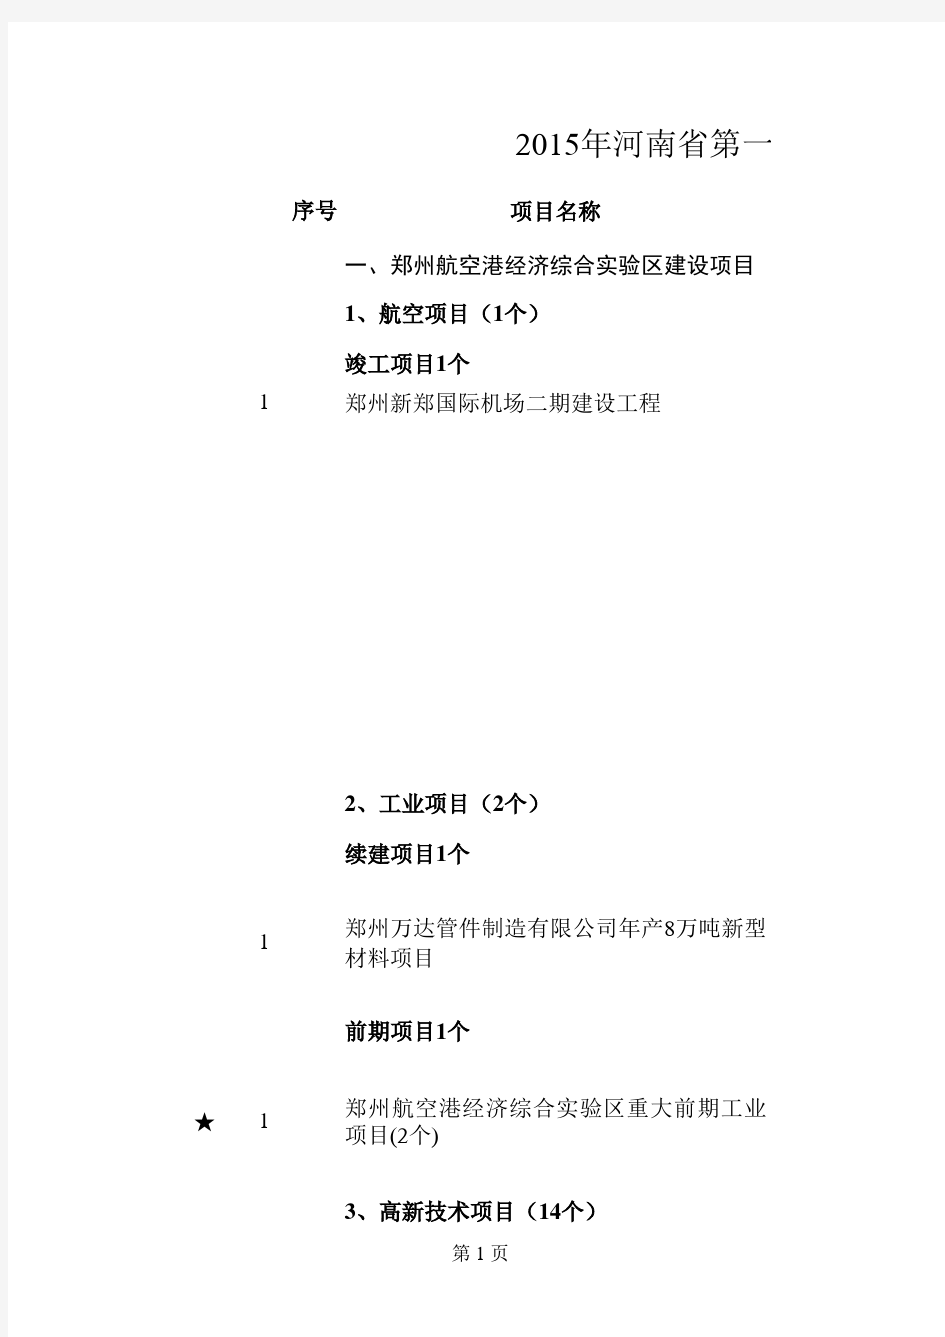 2015年河南省重点重点项目名单汇总表